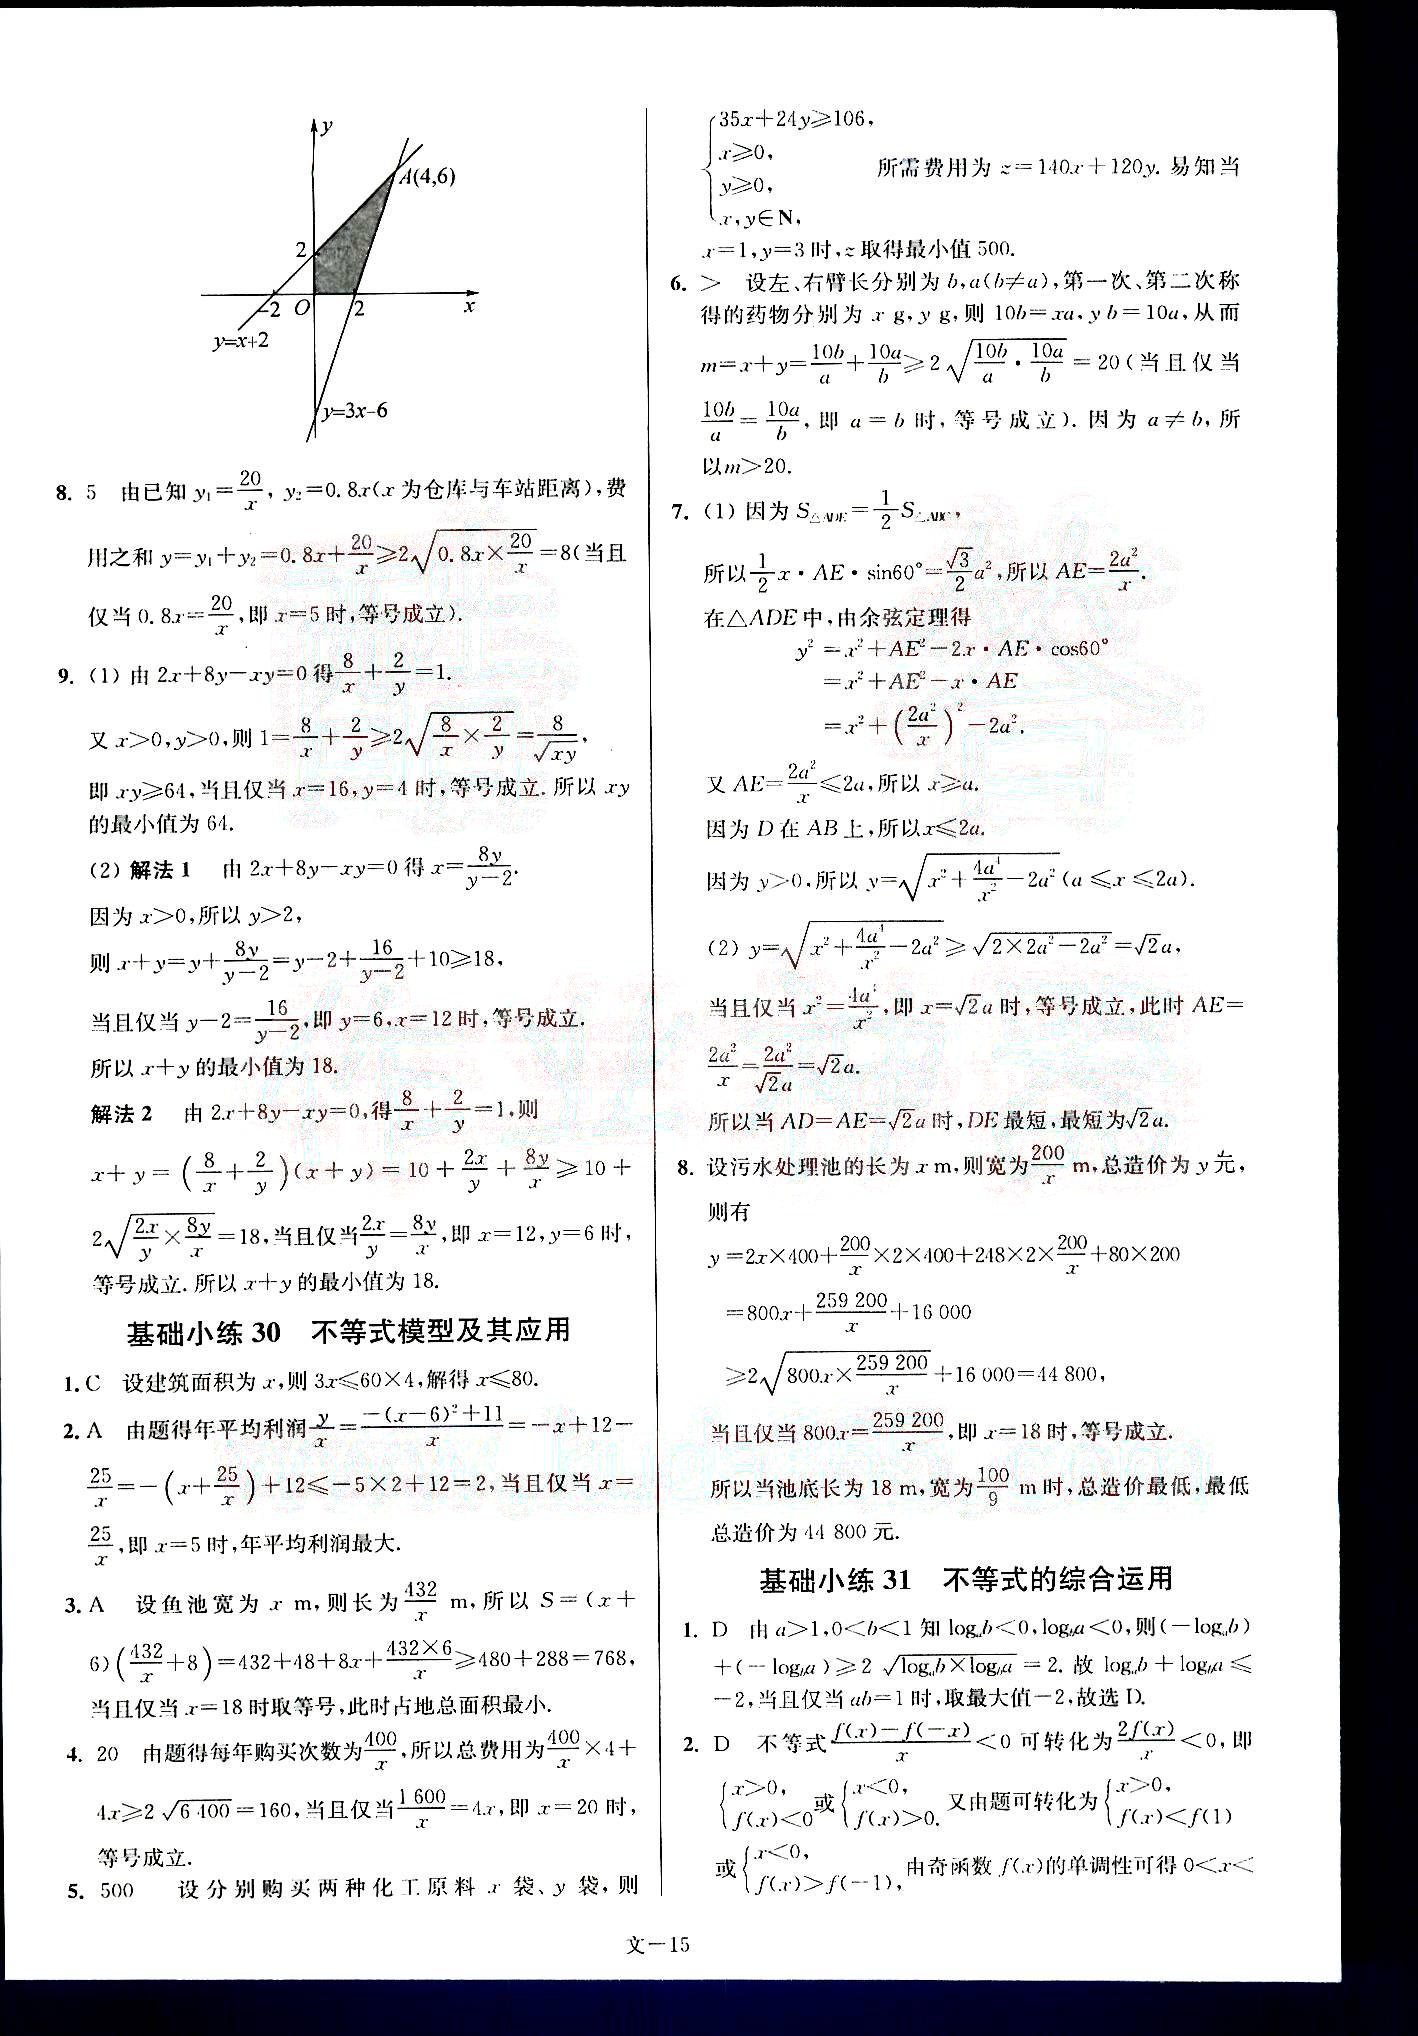 小题狂做-高考数学-文科-最基础篇南京大学出版社 第3部分 [5]